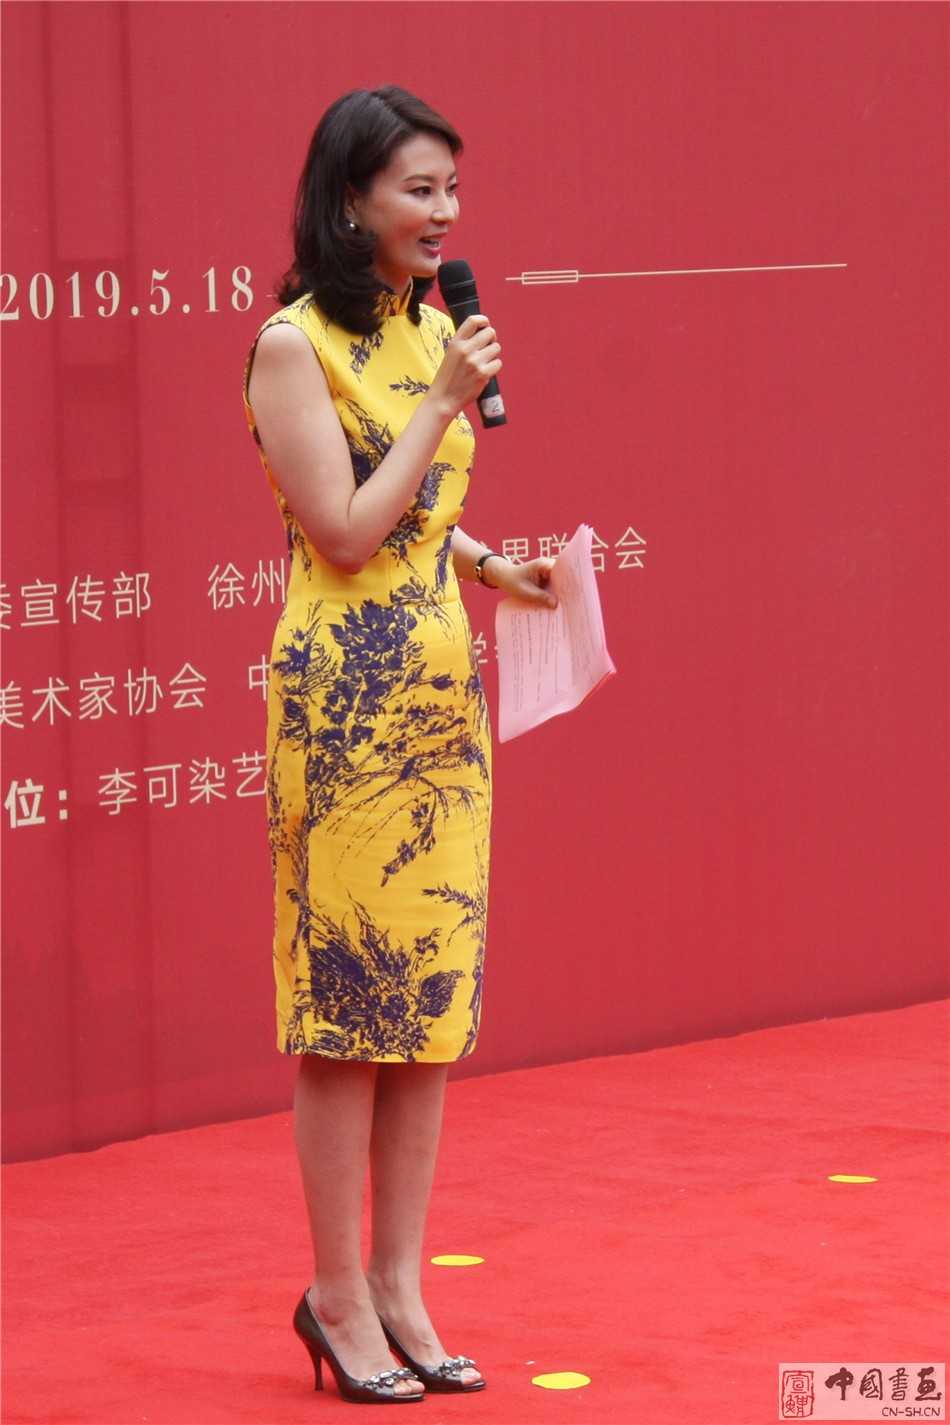 作品展开幕式由中央电视台节目主持人刘芳菲主持.